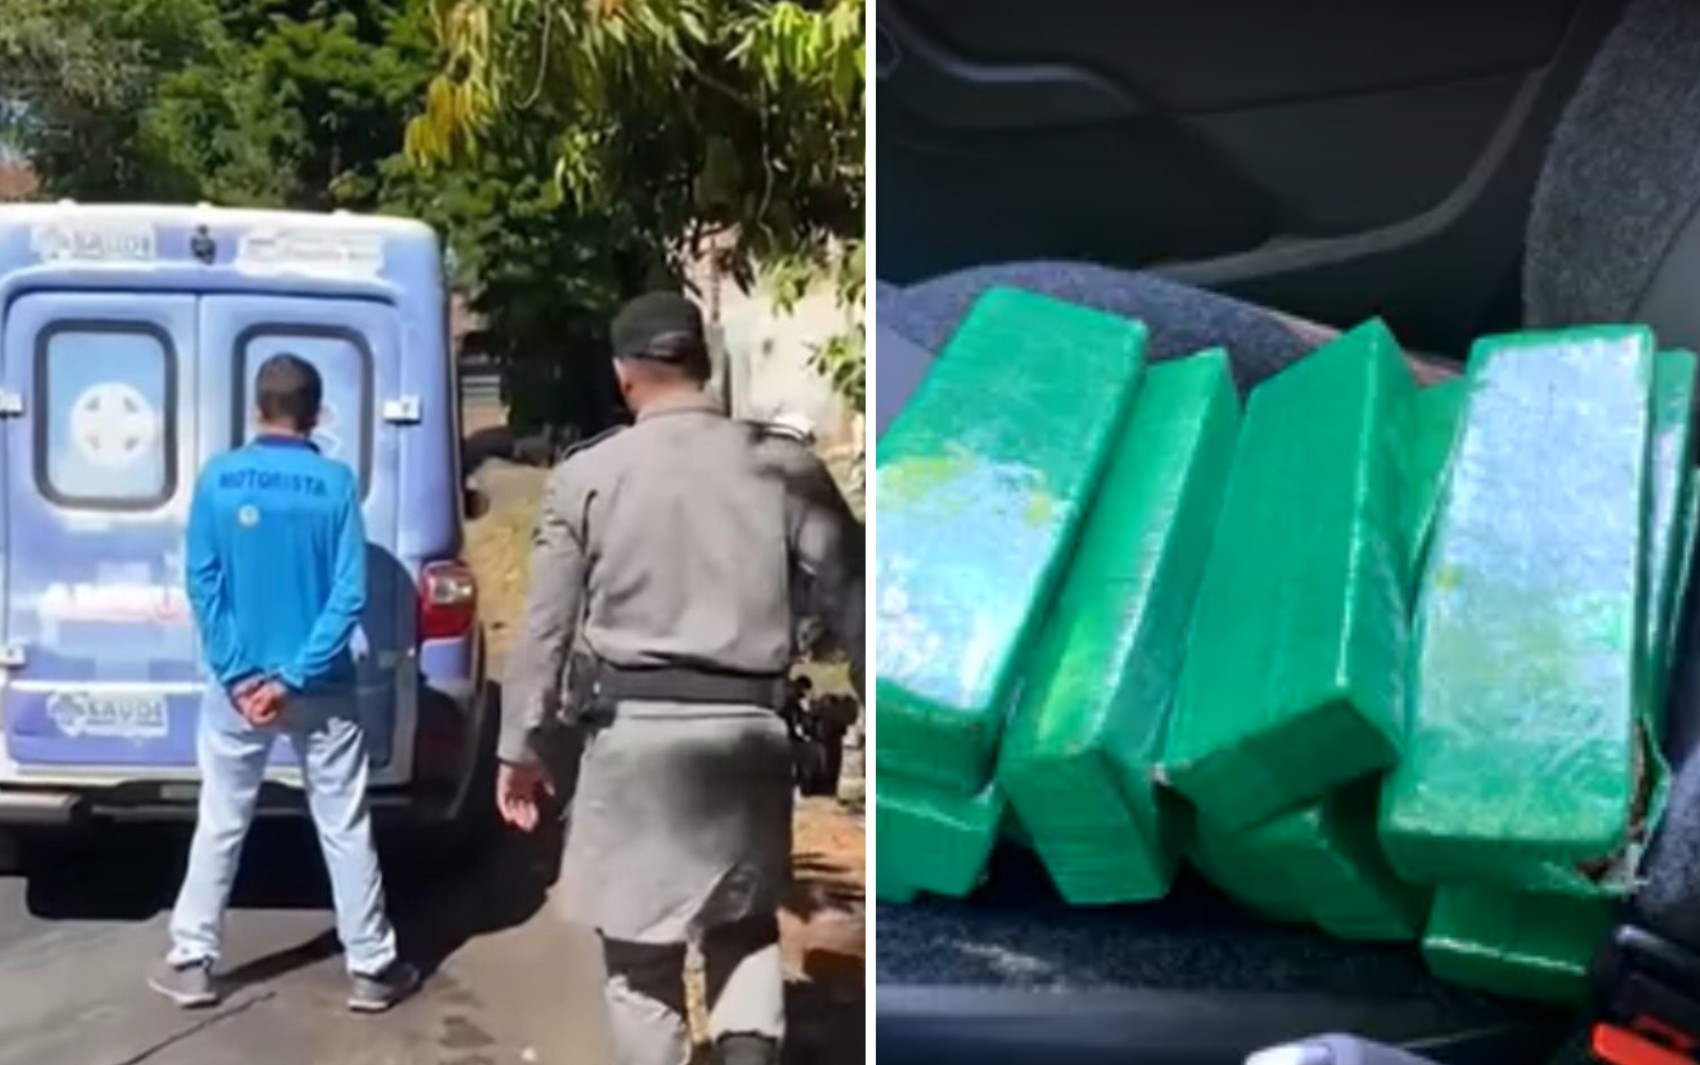 Filho de vereador é preso suspeito de transportar drogas em ambulância de prefeitura em Goiás